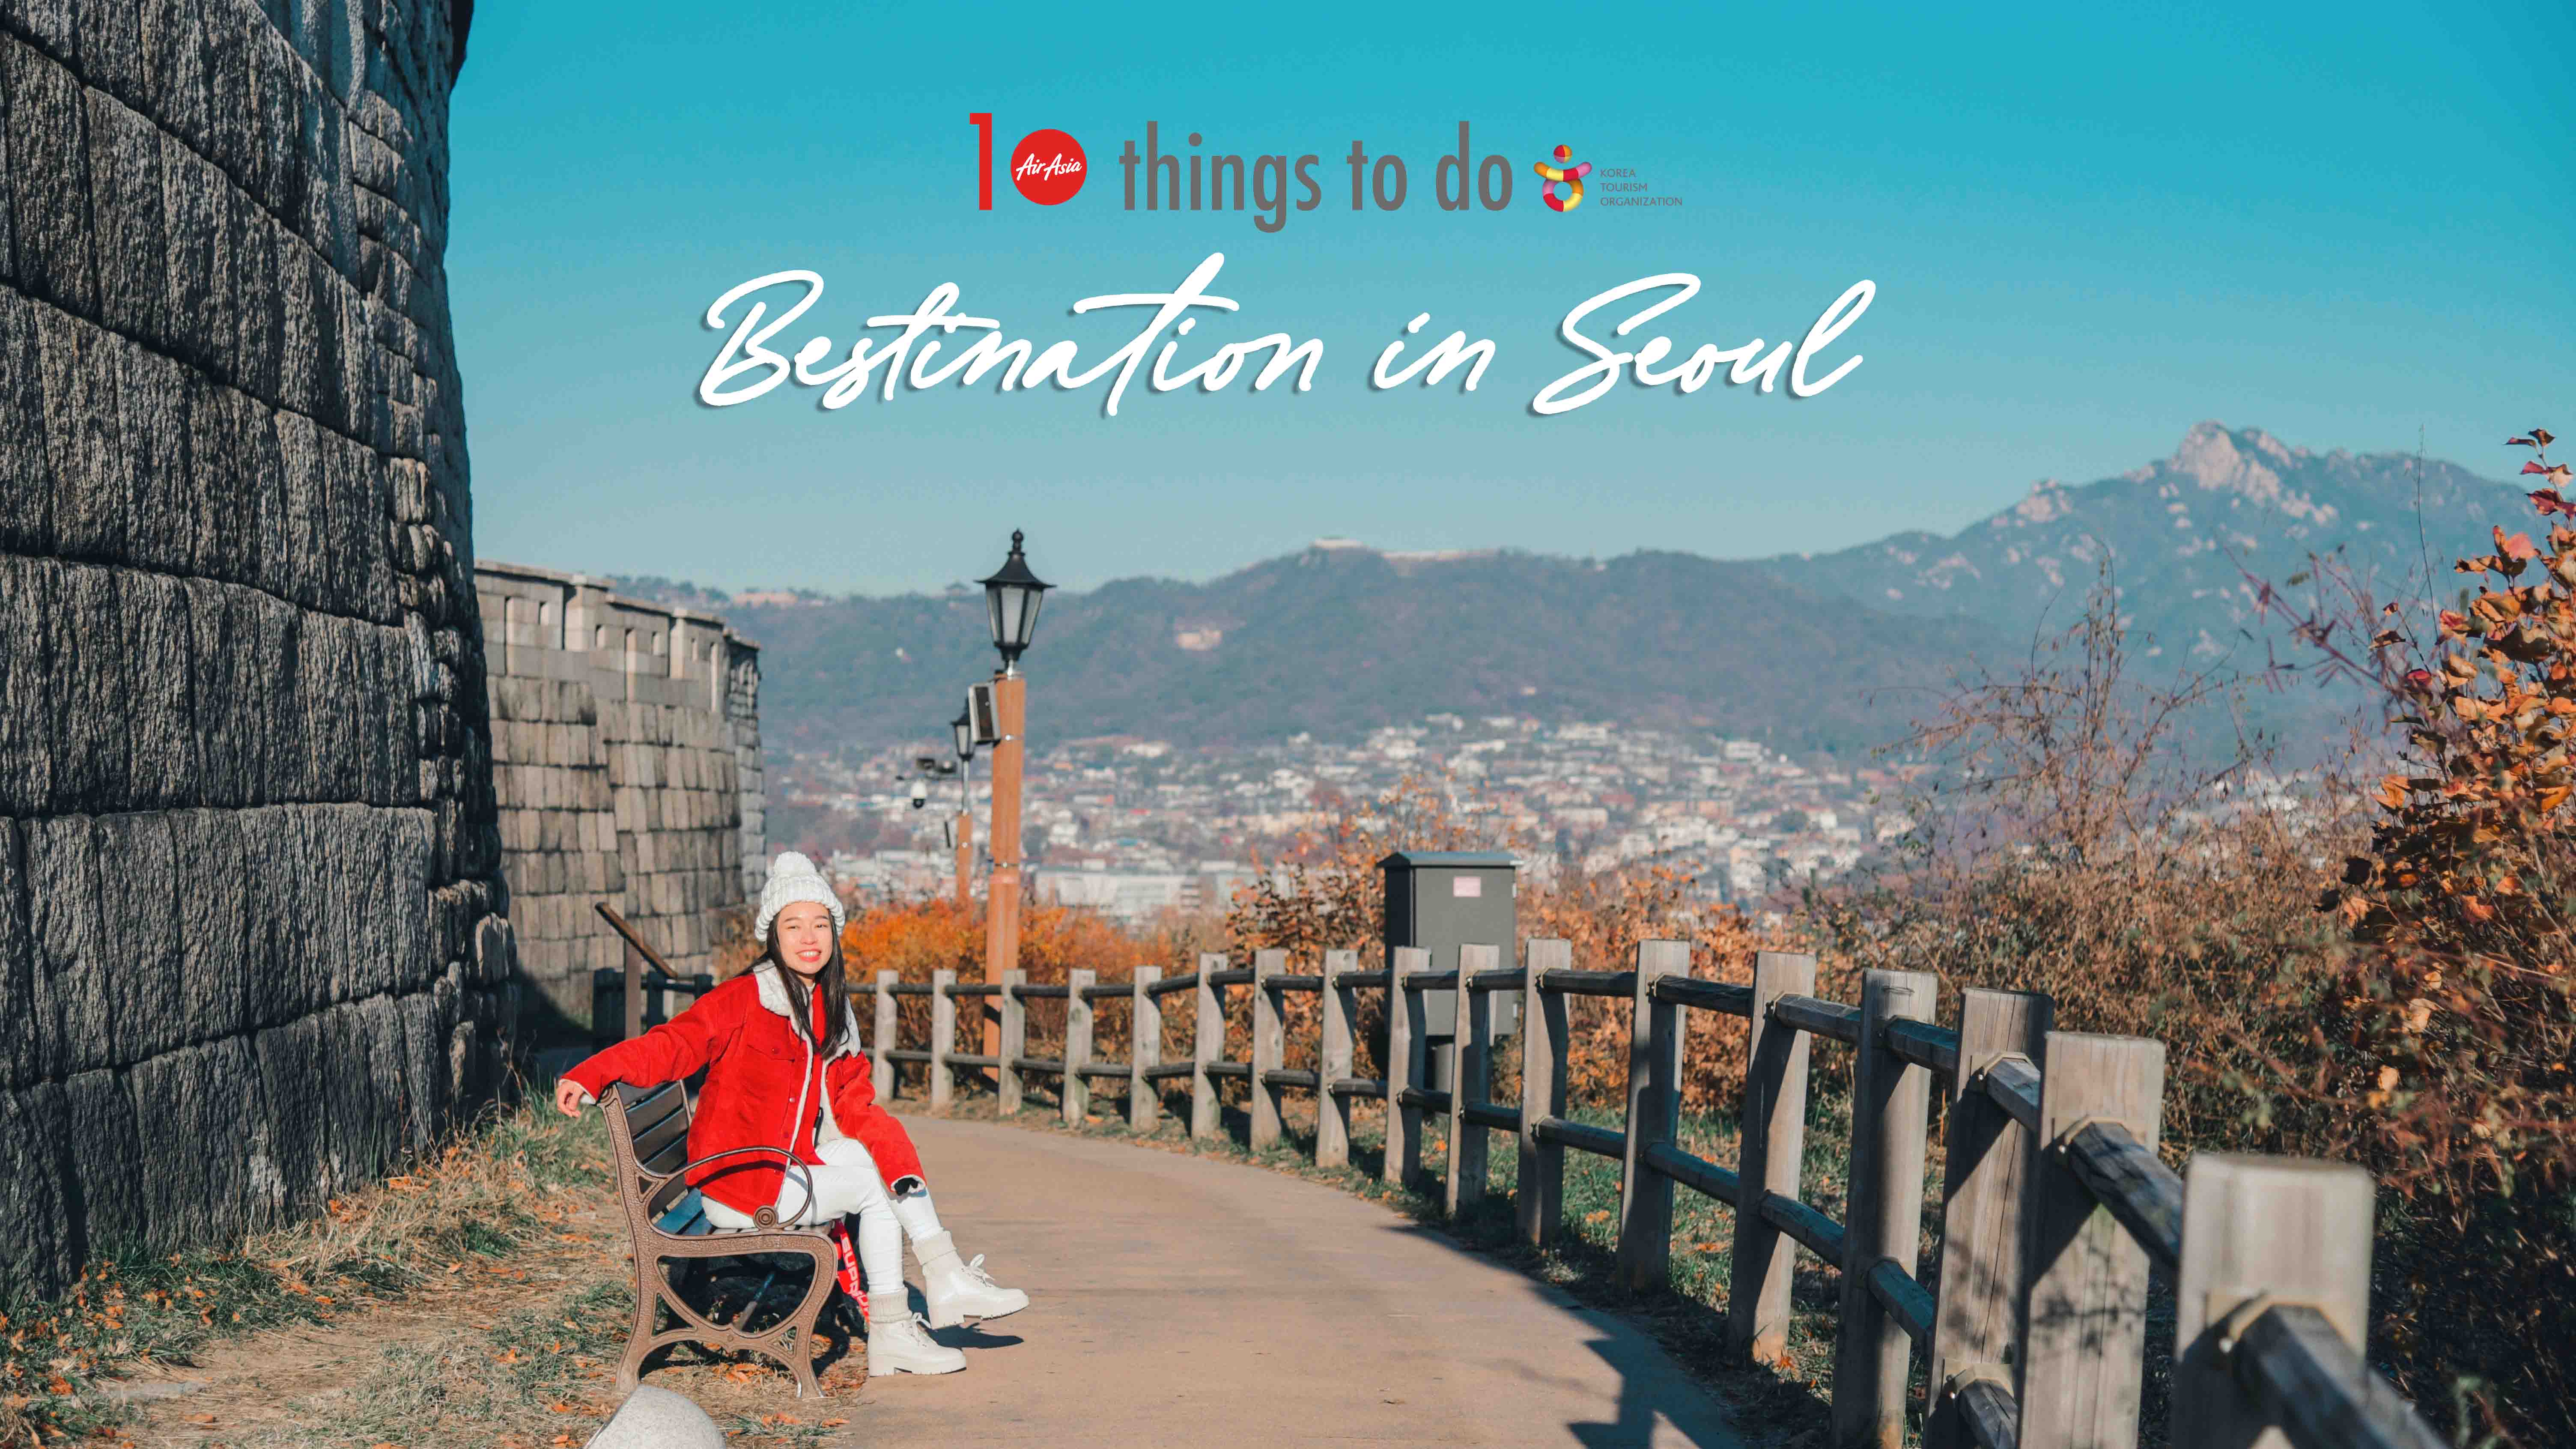 รีวิว เกาหลี : 10 อย่างให้ไปทำท้าลมหนาวที่กรุงโซล